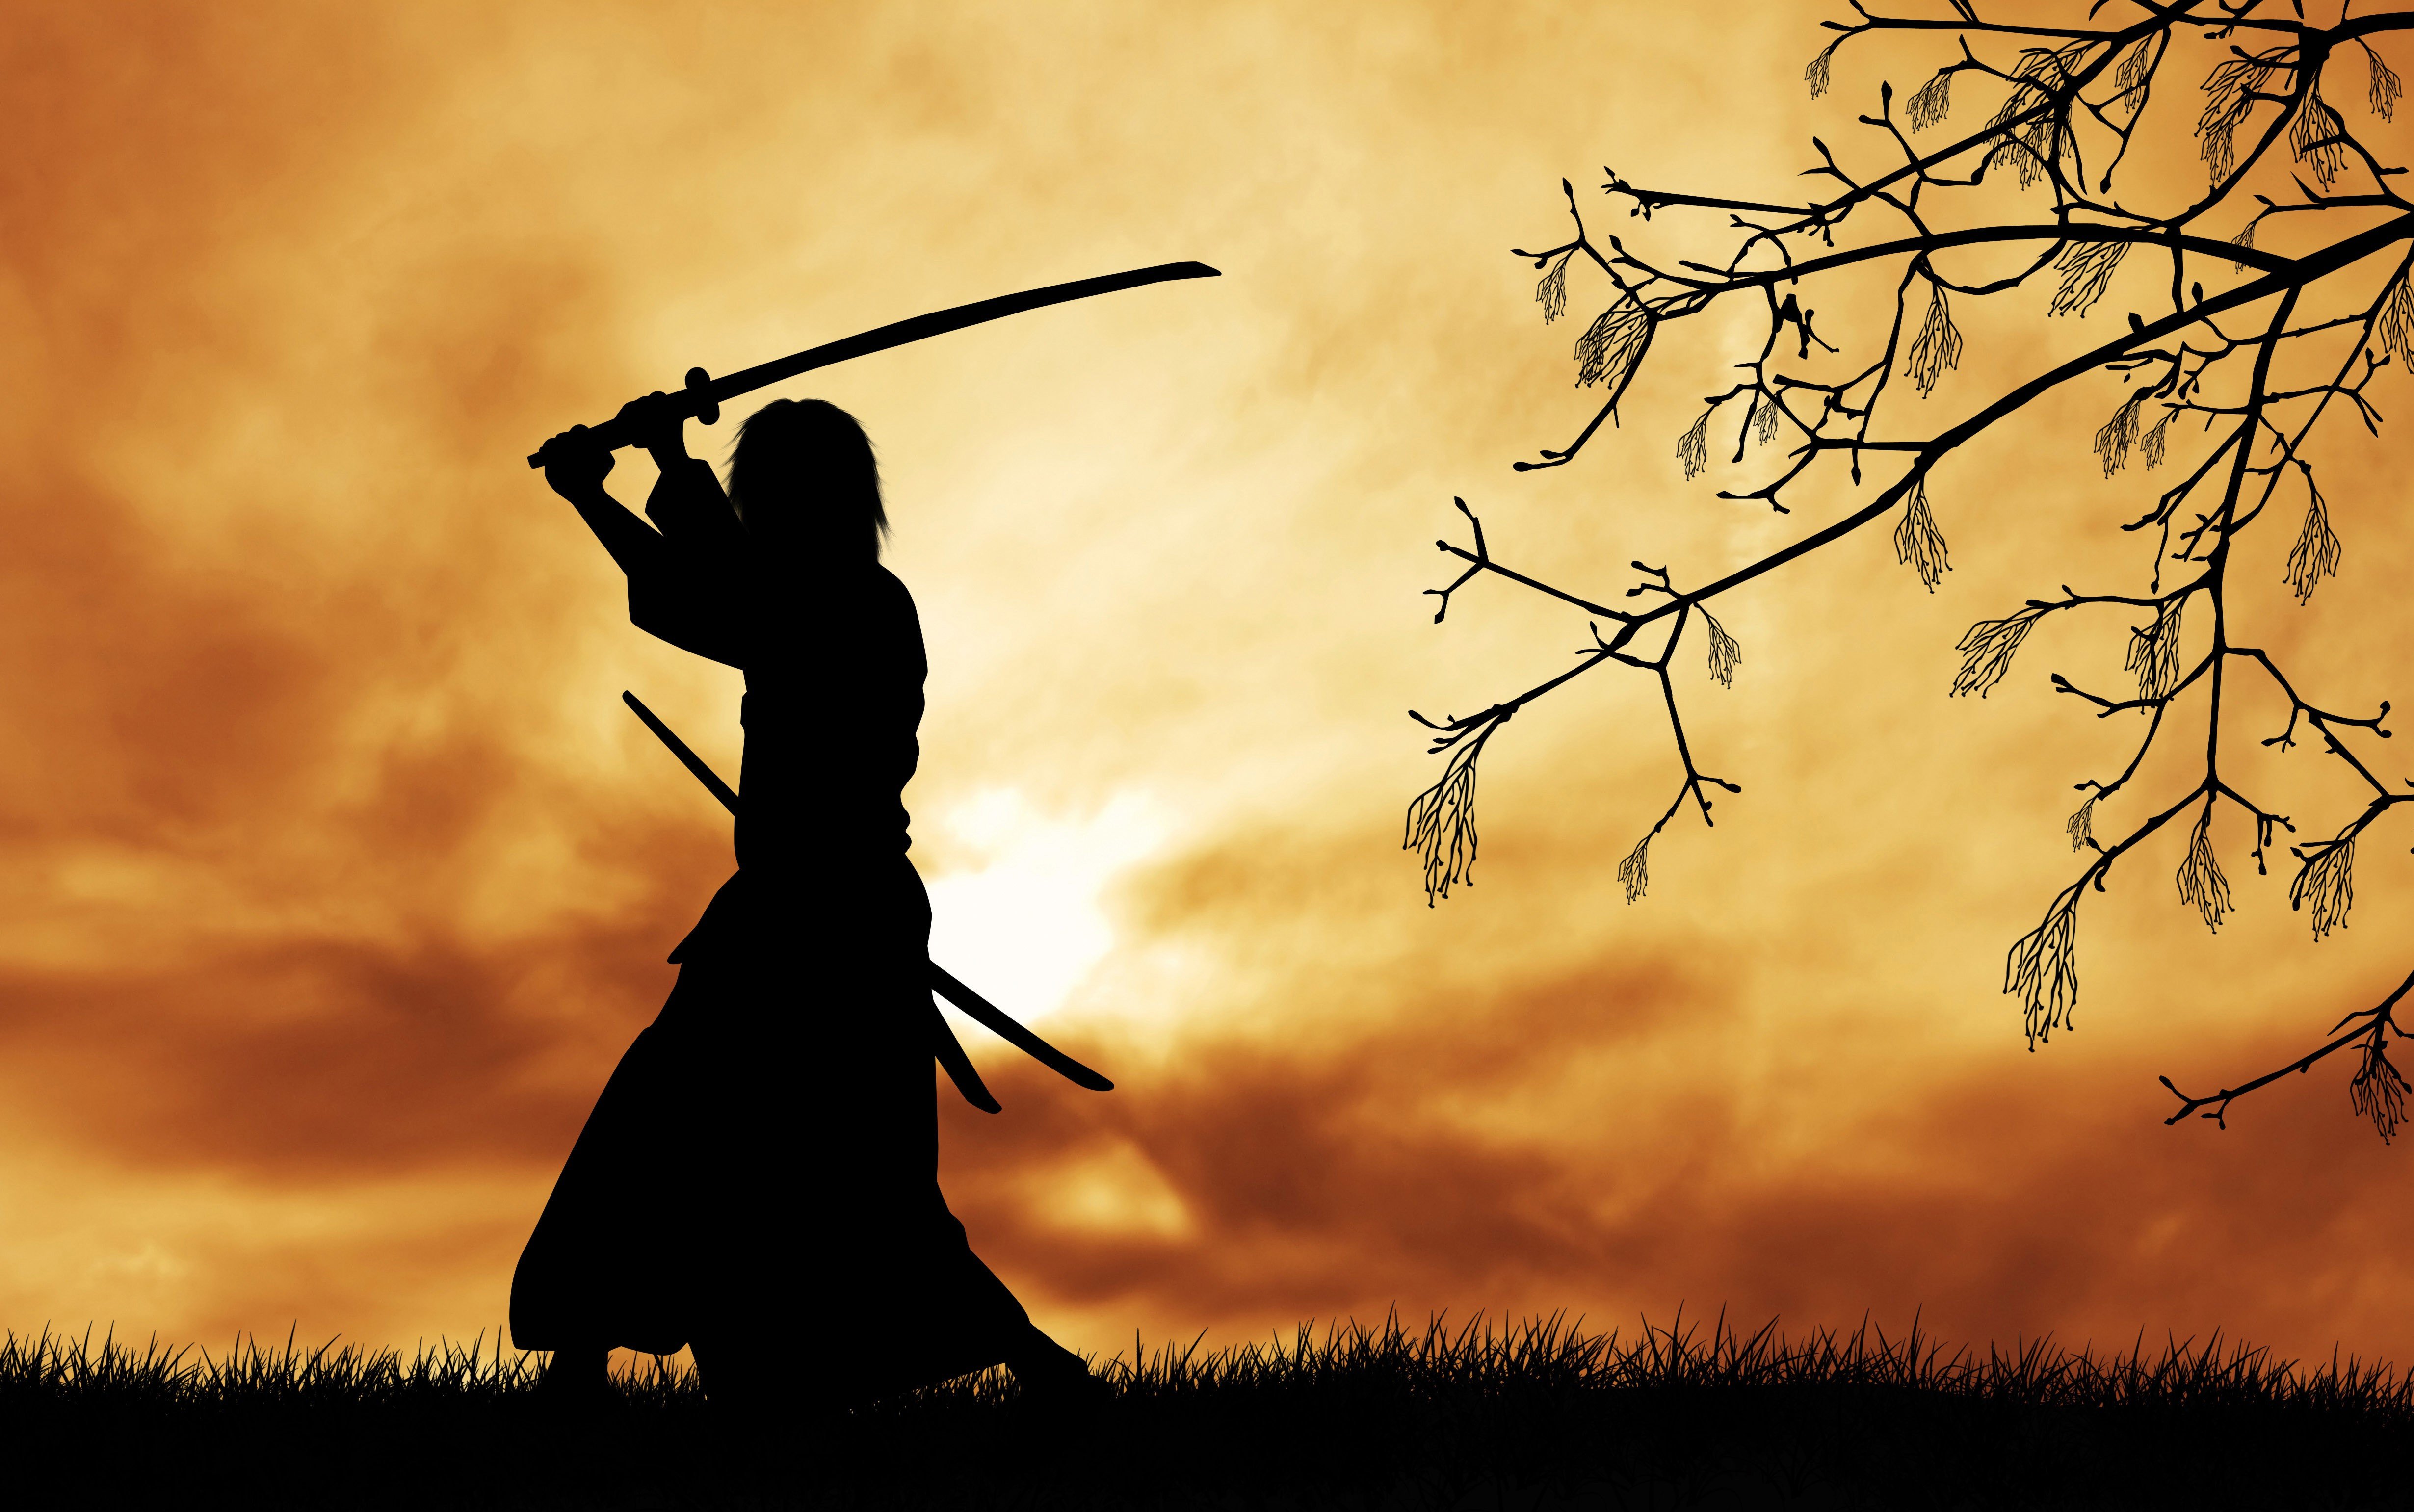 samurai, Japanese clothes, Katana, Silhouette, Trees, Branch, Grass, Clouds, Sun, Digital art, Sword Wallpaper